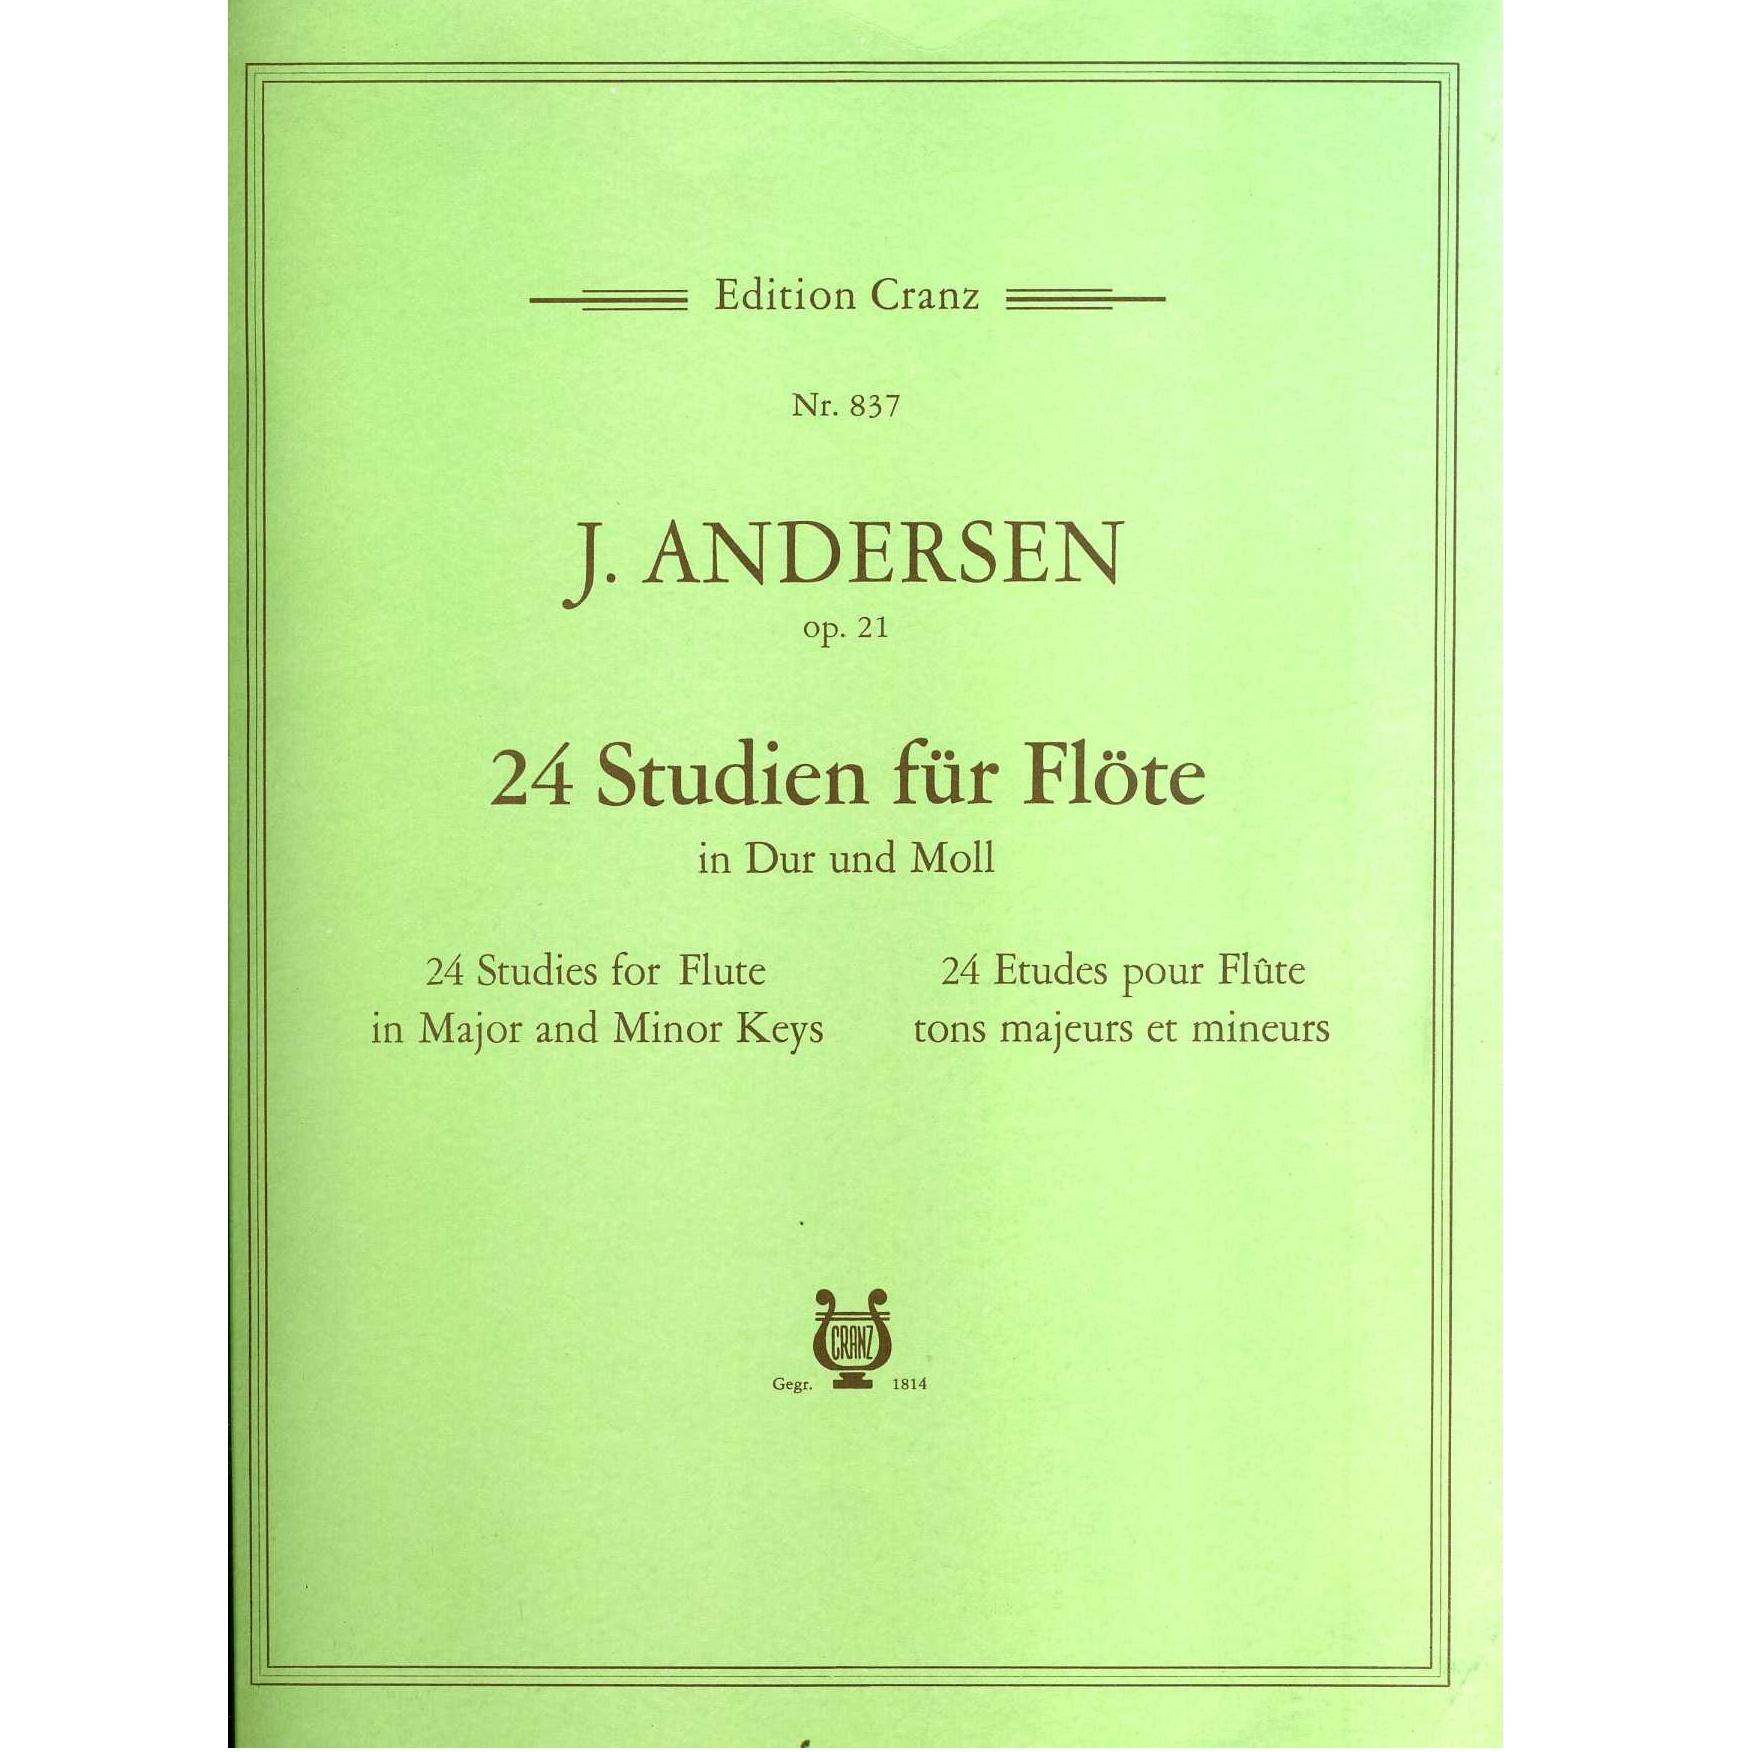 J. Andersen op. 21 24 Studien fur Flote in Dur und Moll - Edition Cranz